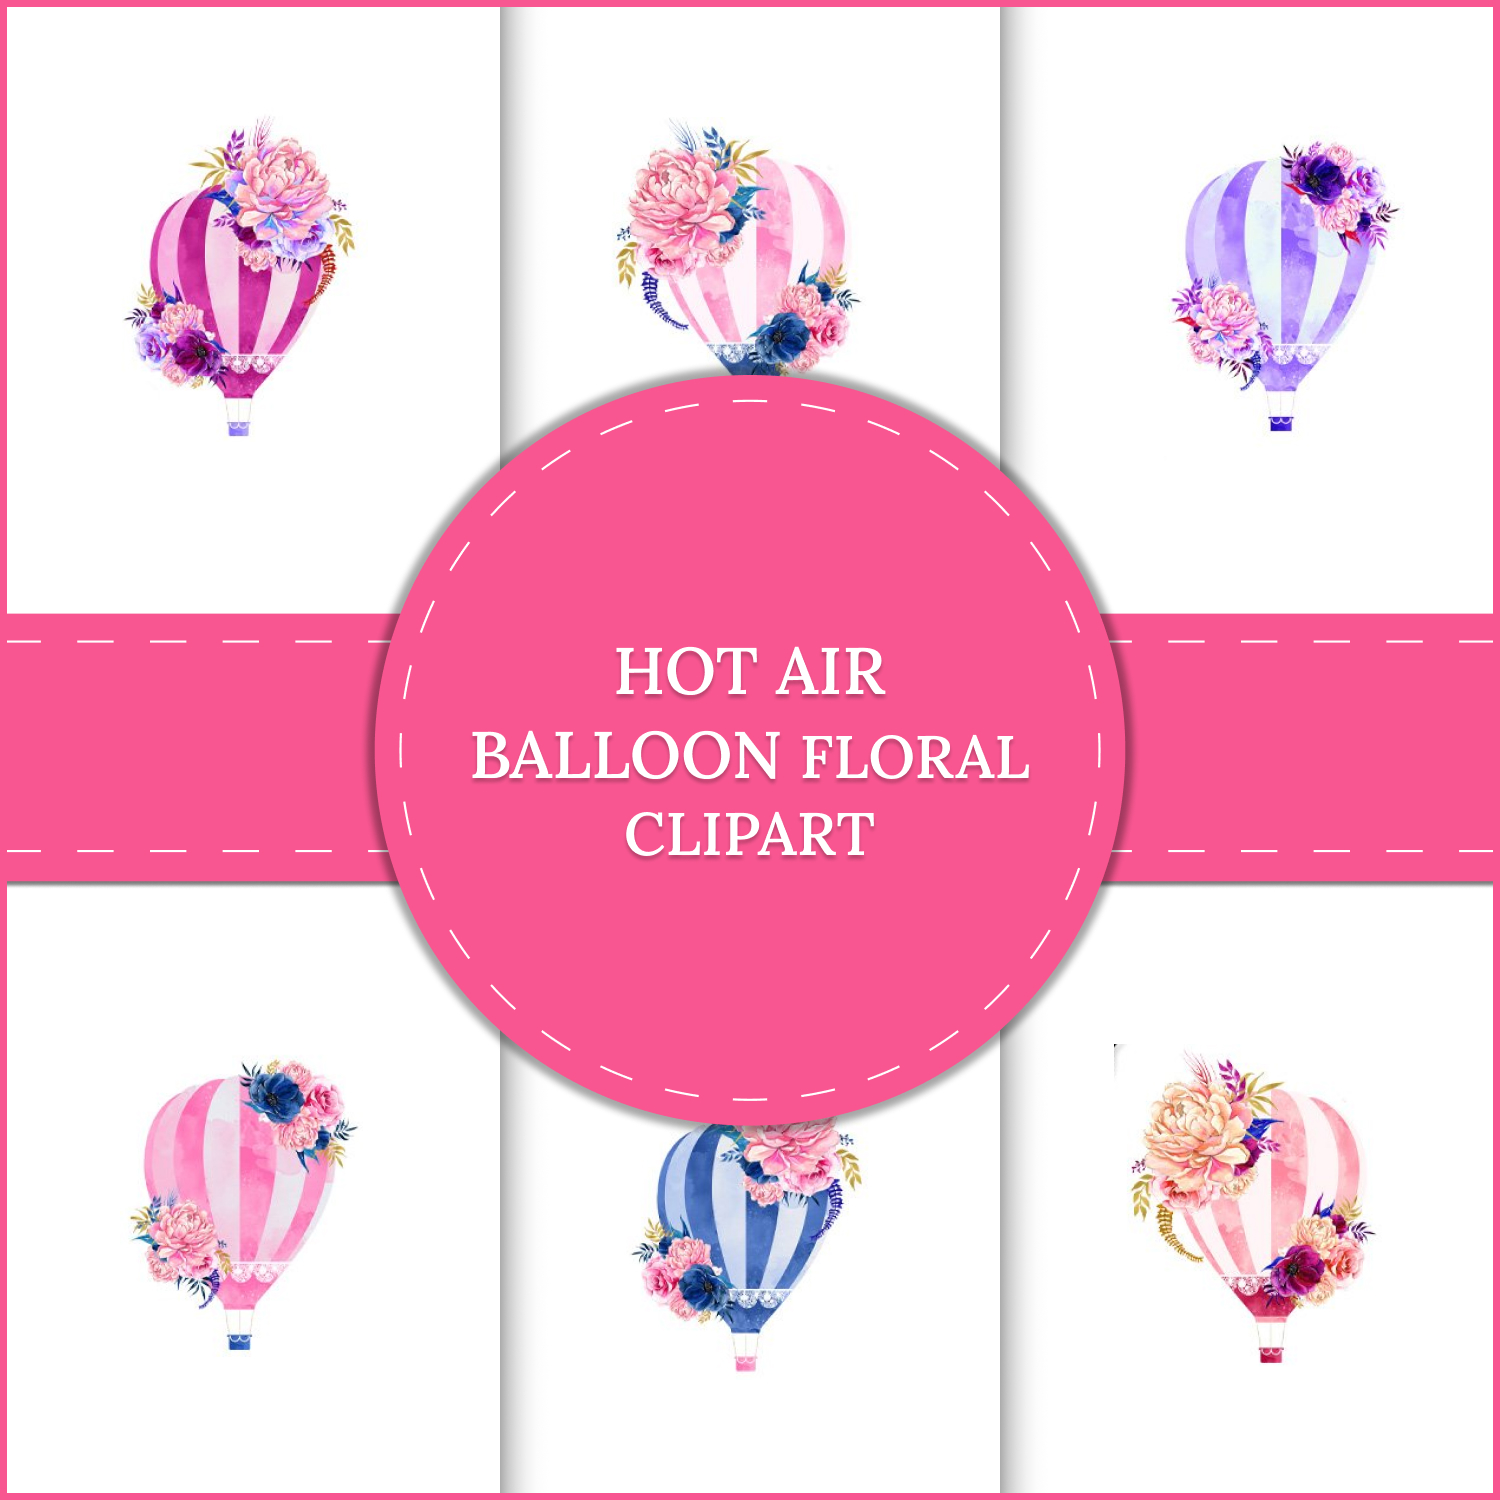 Hot Air Balloon Floral Clipart.